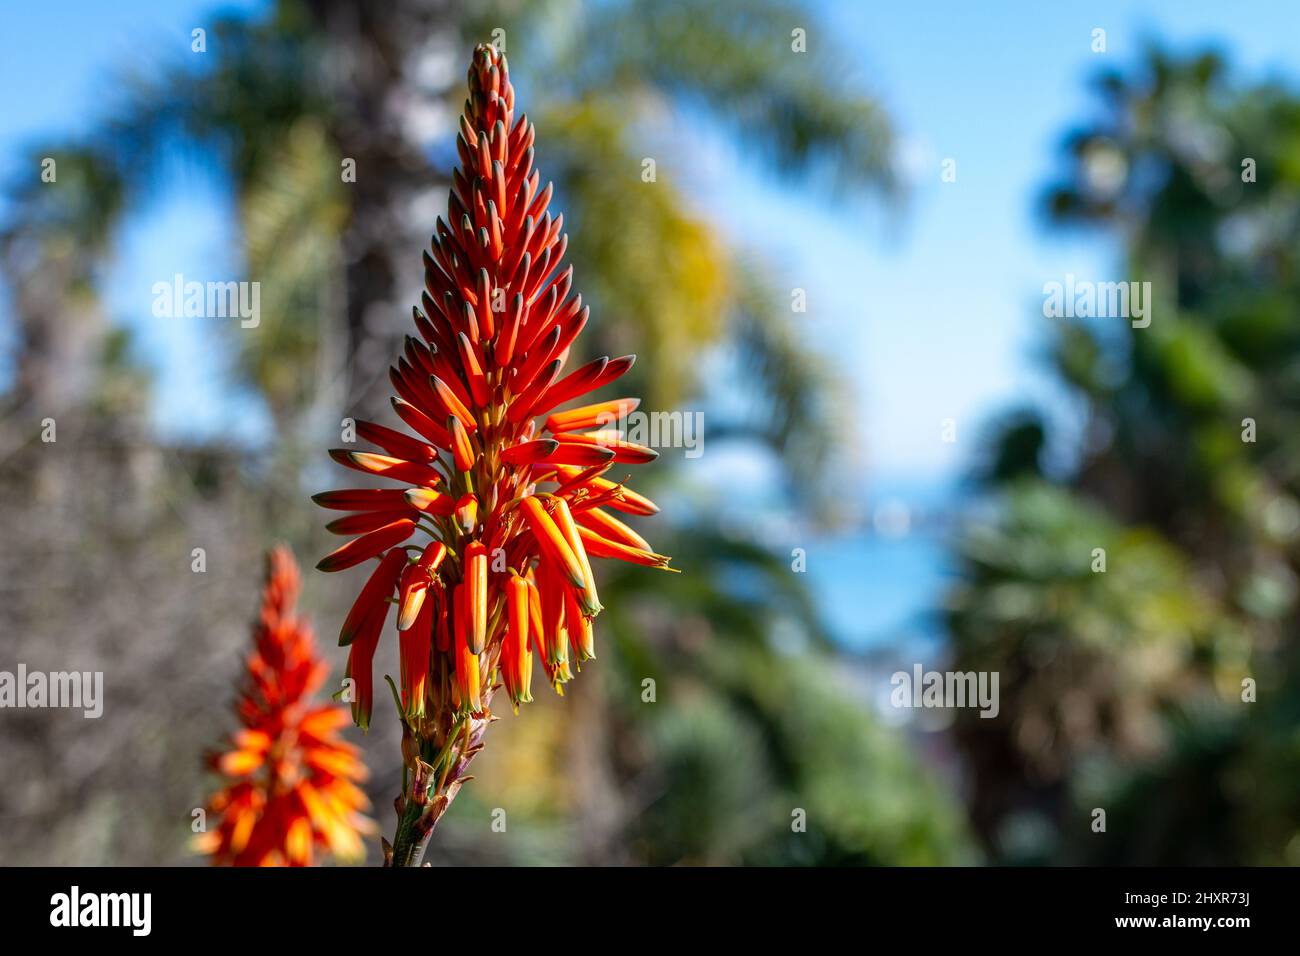 Bitter aloe (Aloe ferox), detail of flowers Stock Photo